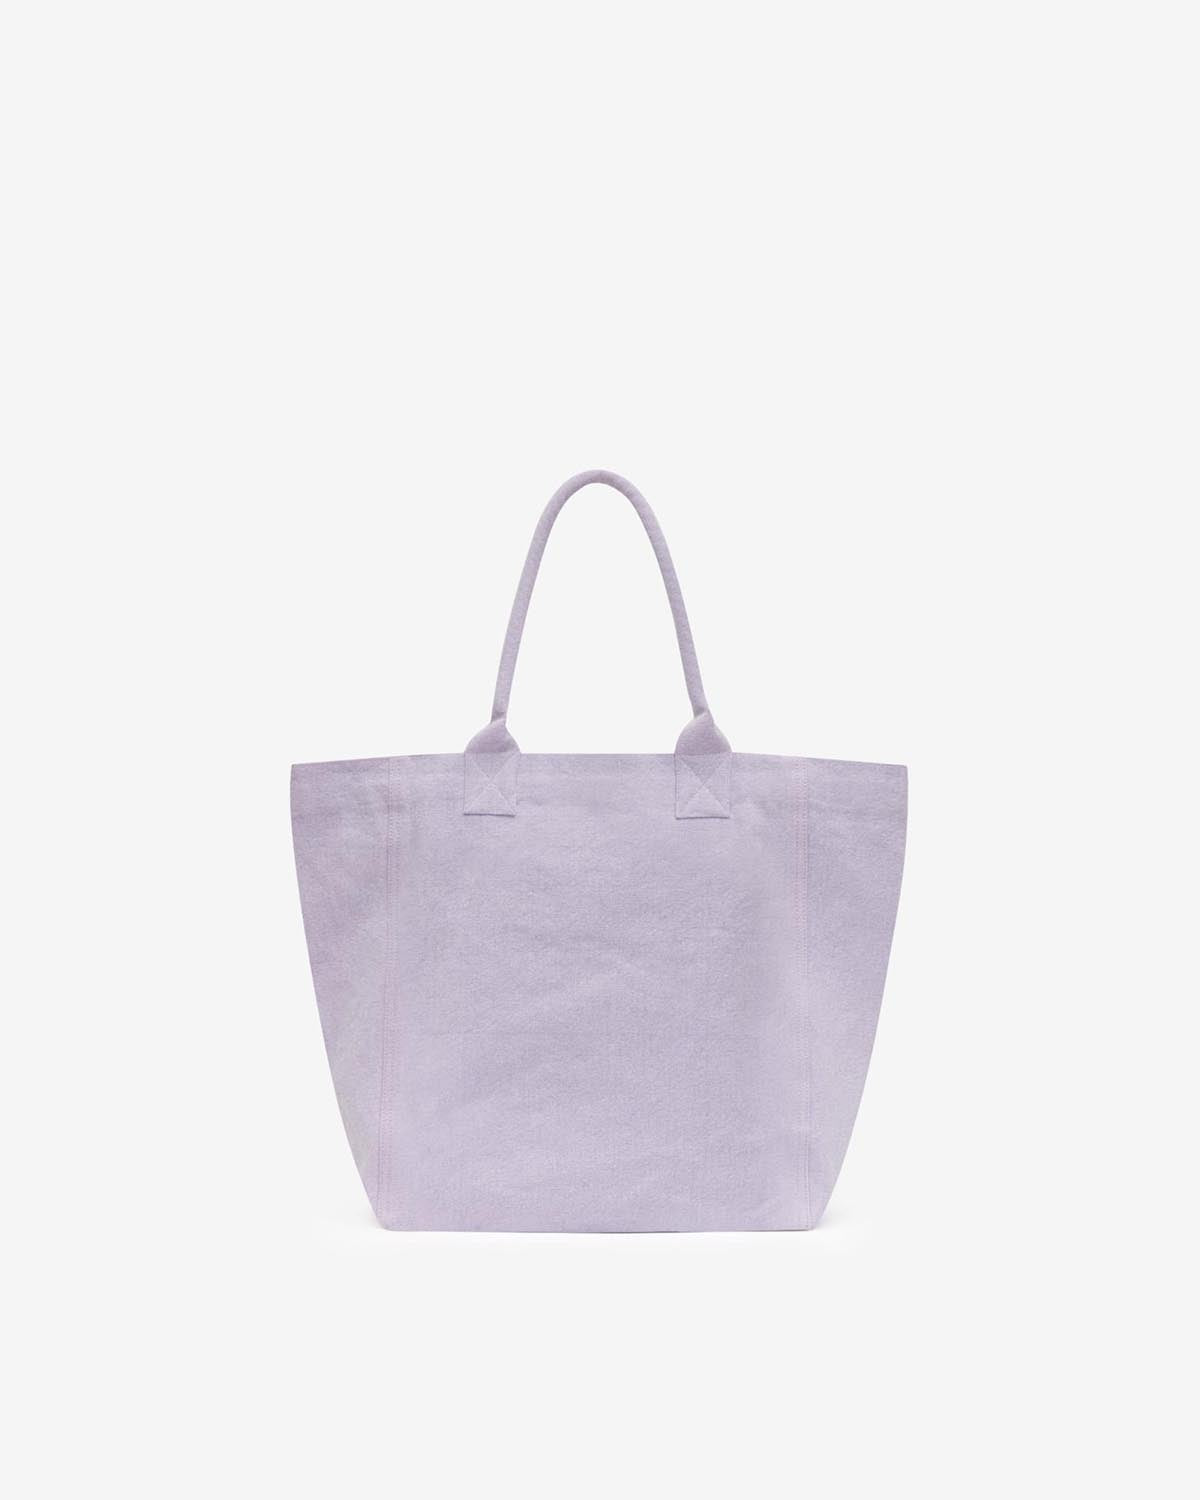 Yenky bag Woman Lilac 2